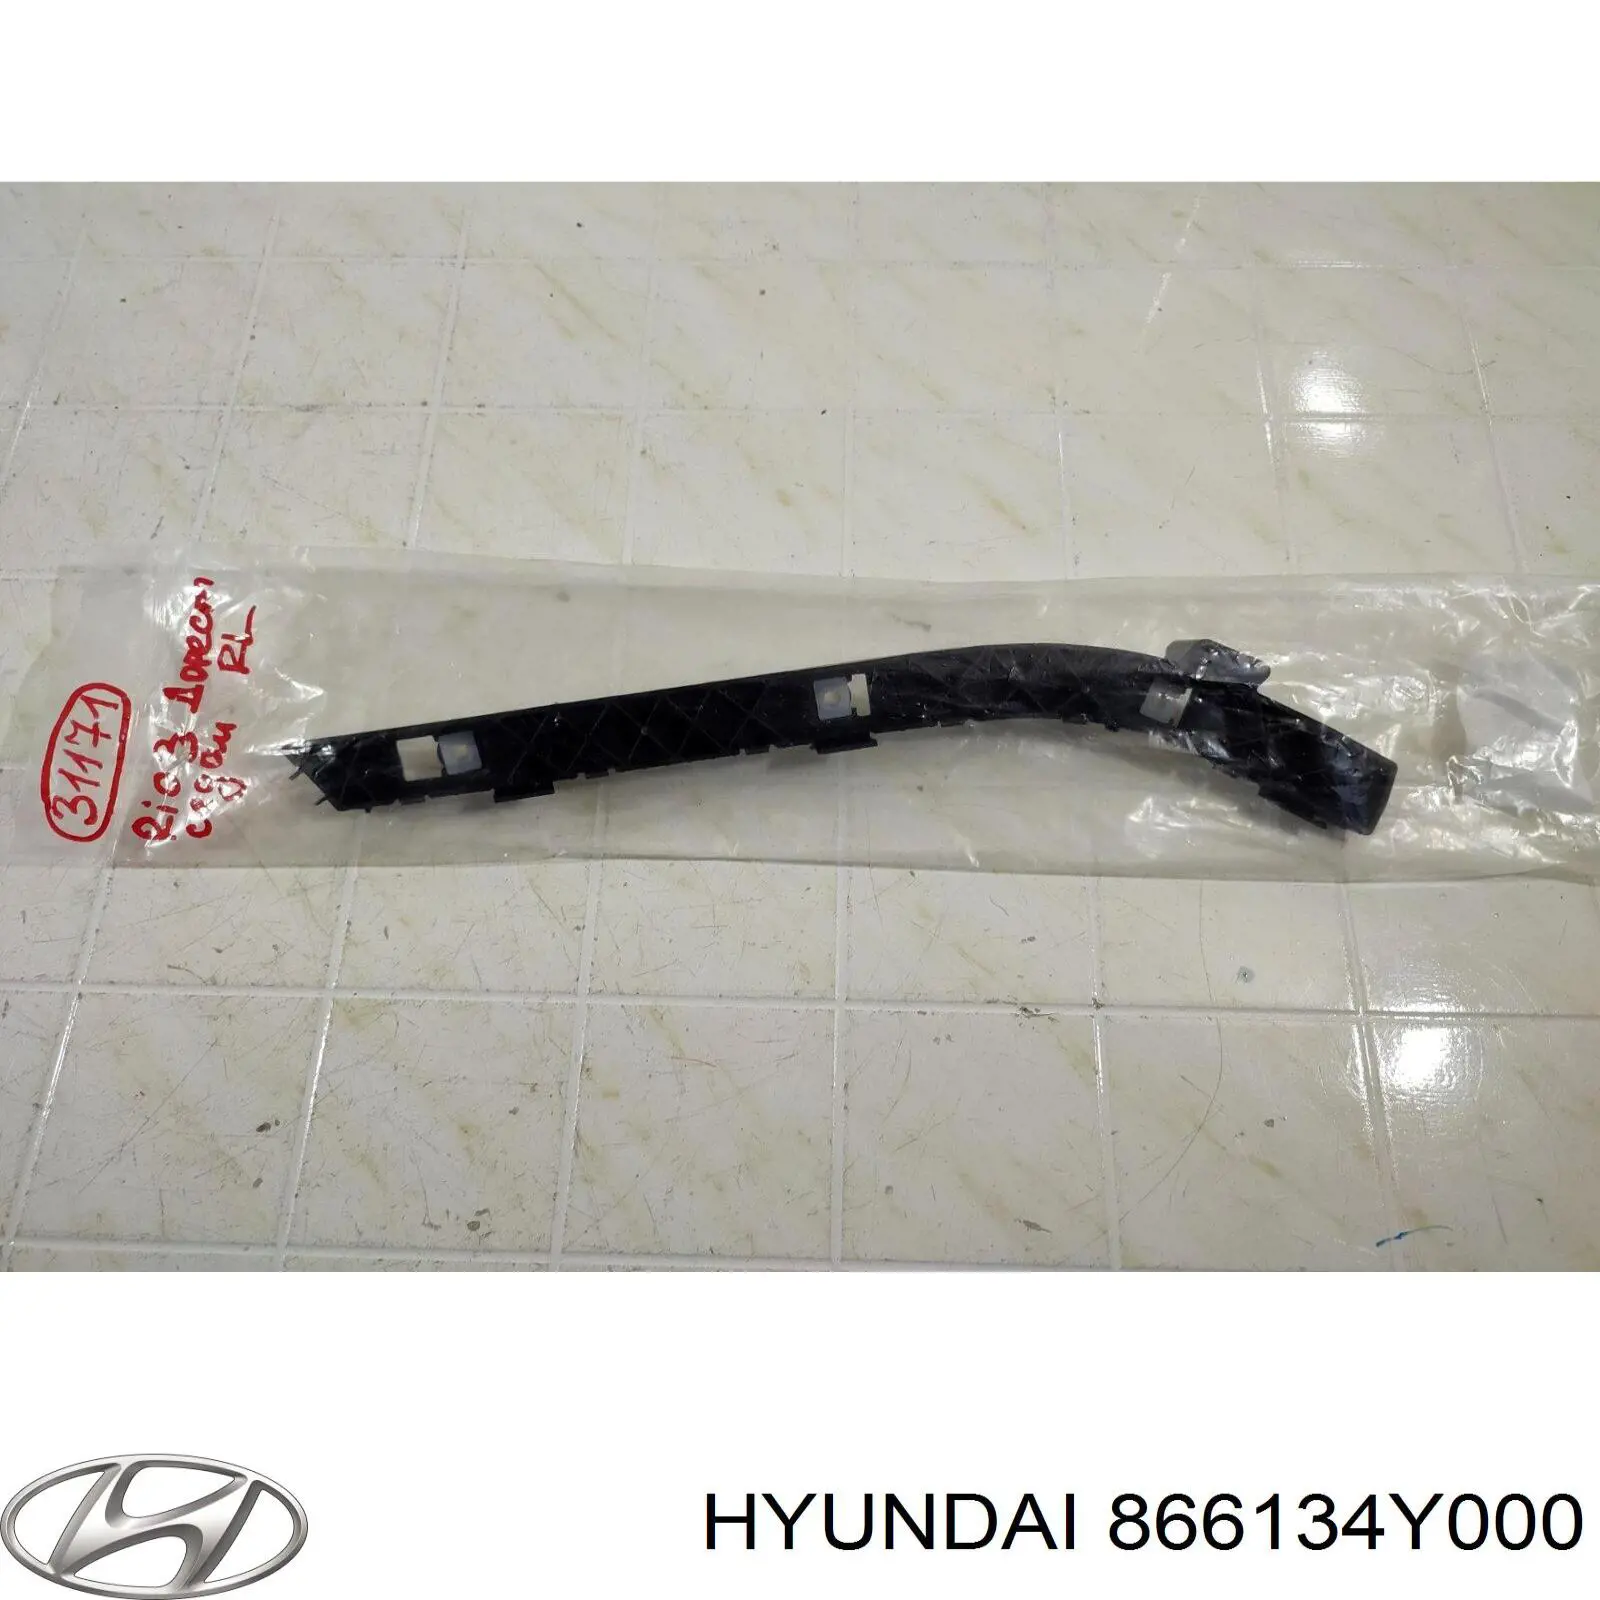 866134y000 Hyundai/Kia consola esquerda do pára-choque traseiro